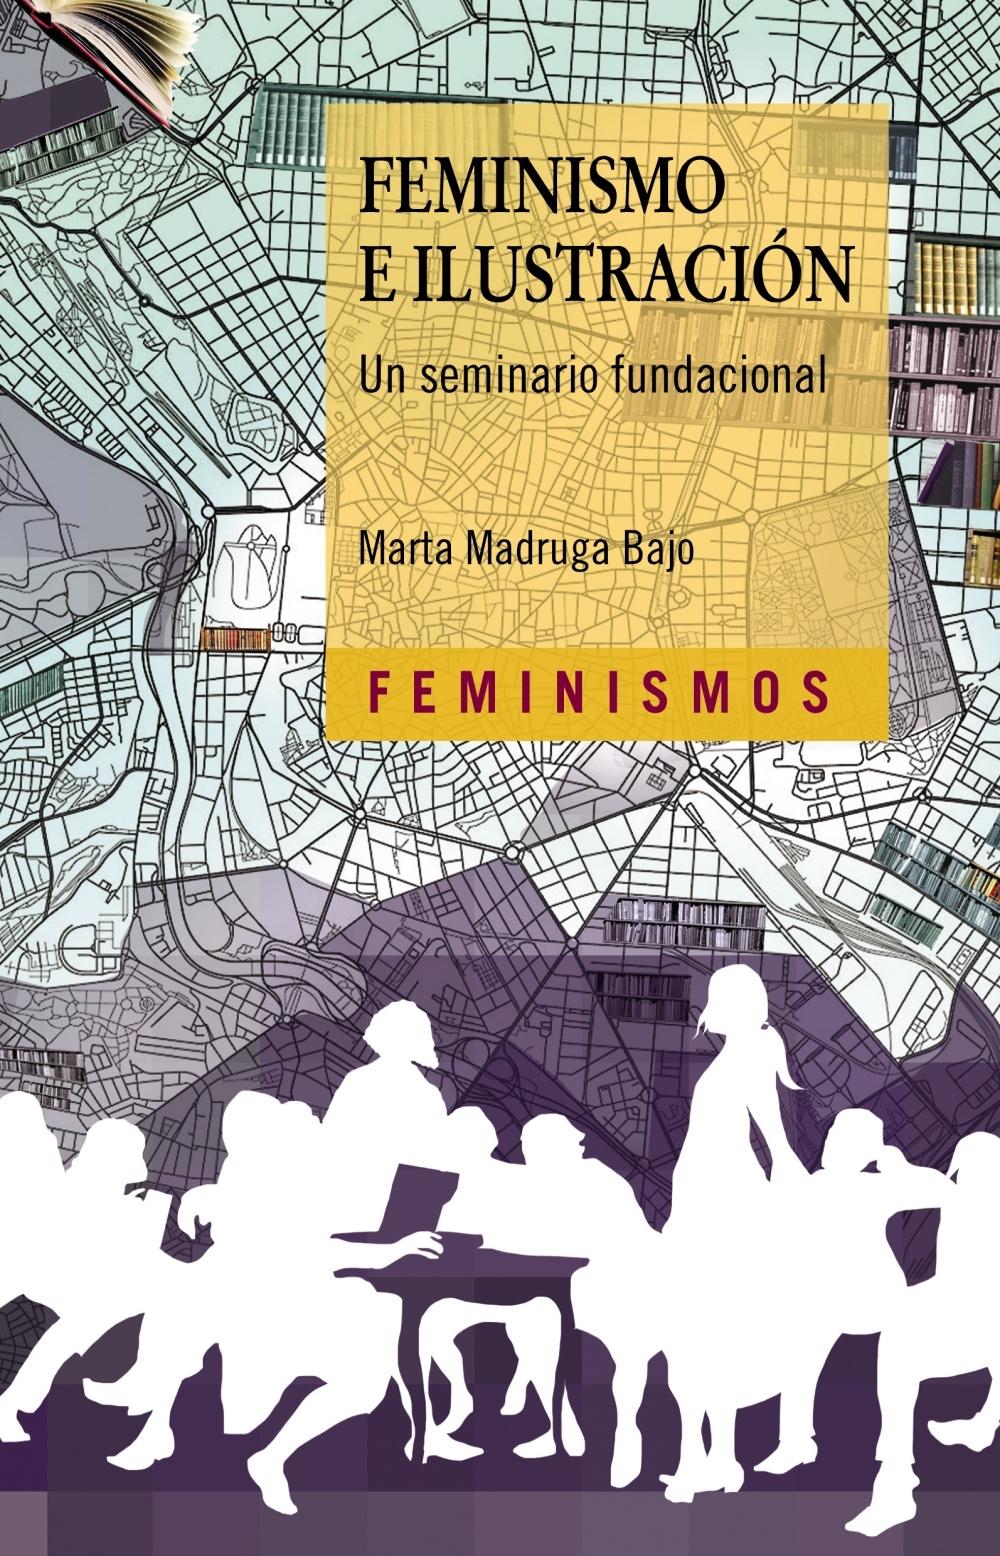 Feminismo e Ilustración "Un seminario fundacional"